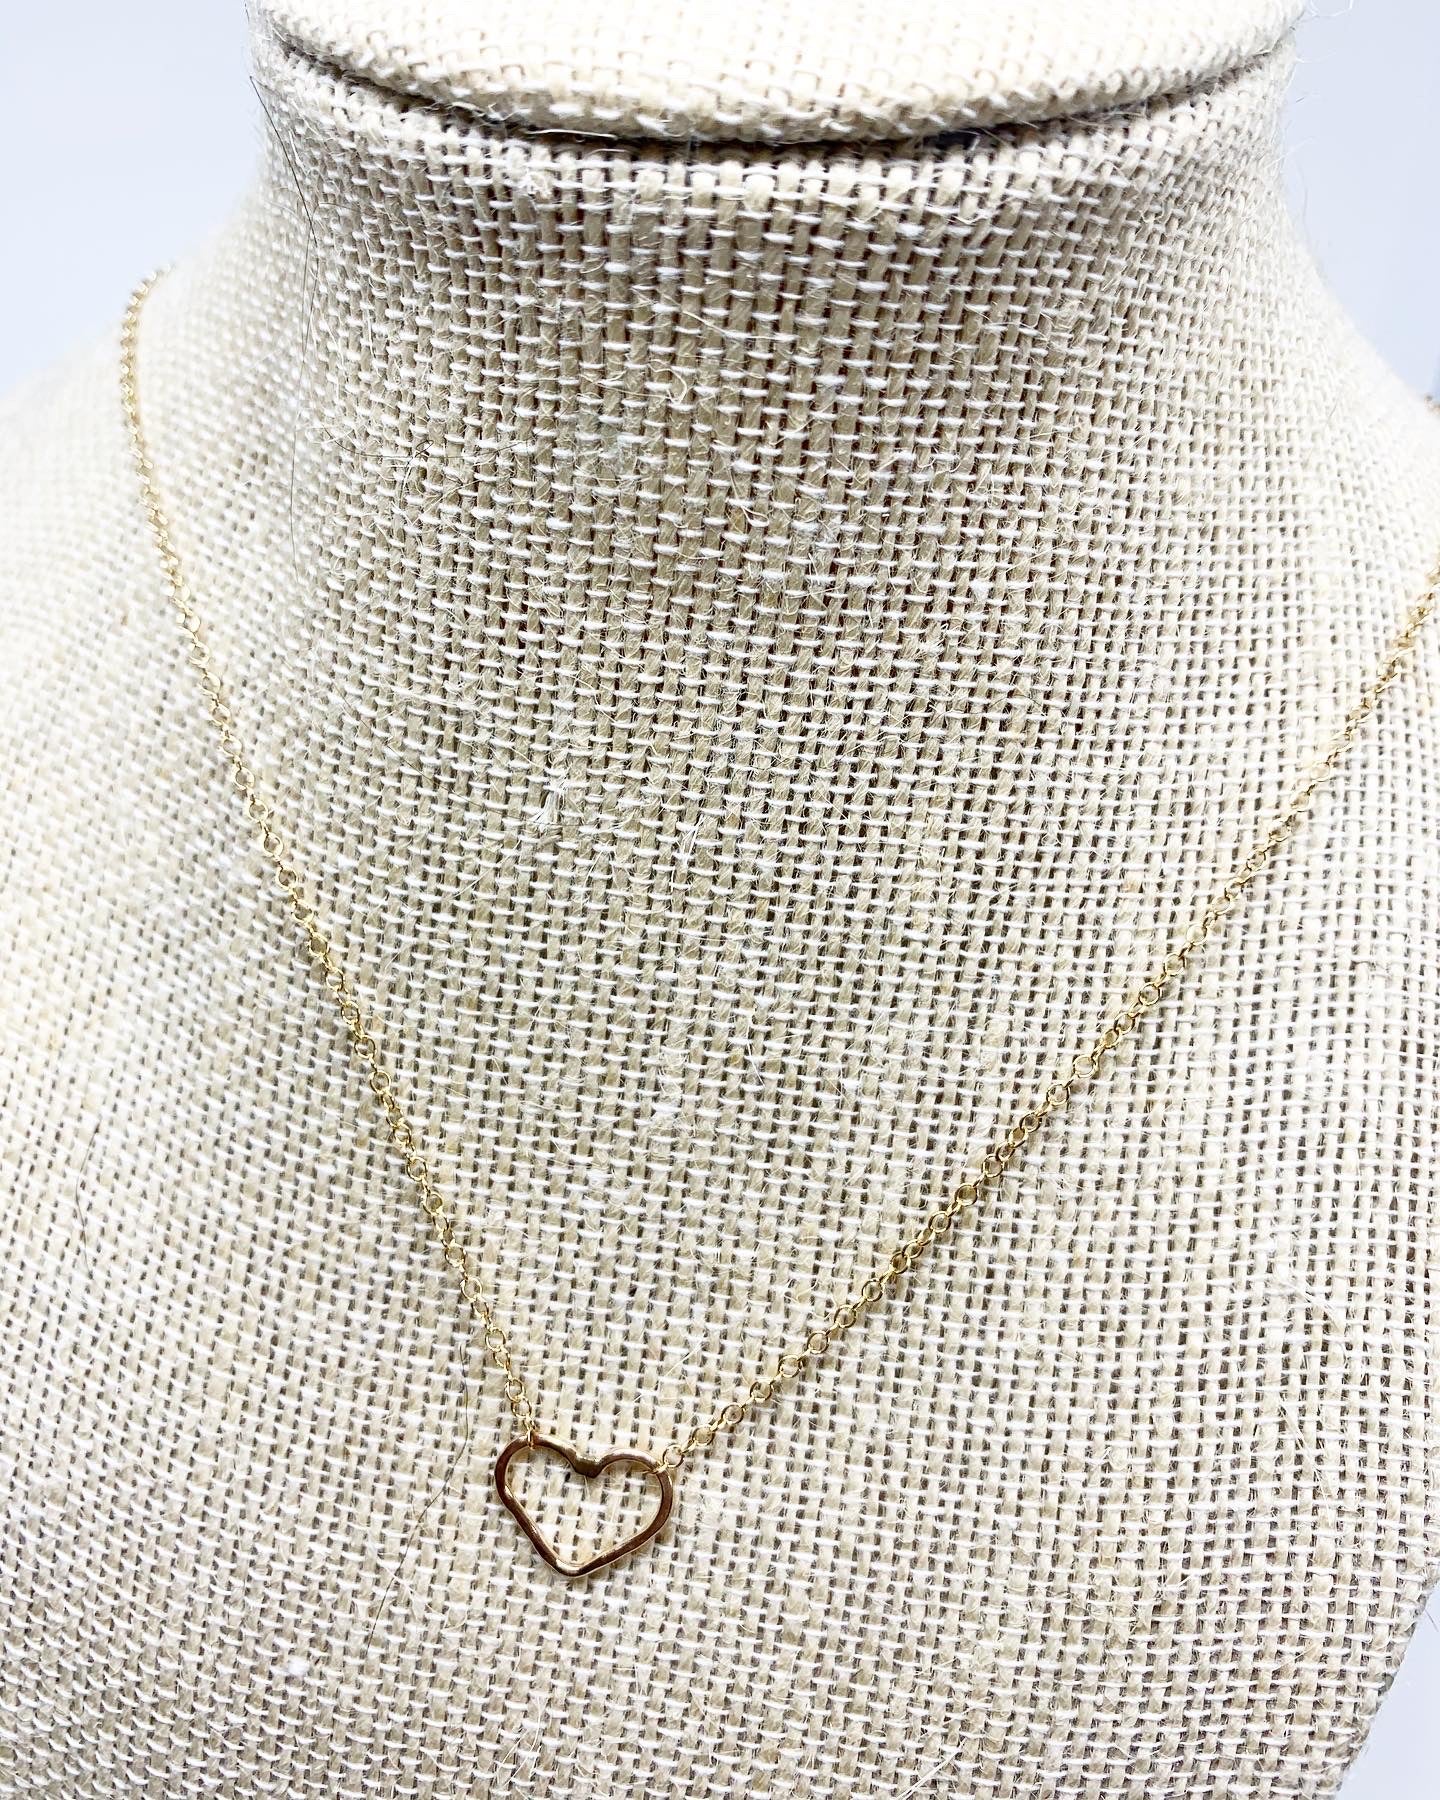 Heart Charm Necklace - Jennifer Cervelli Jewelry